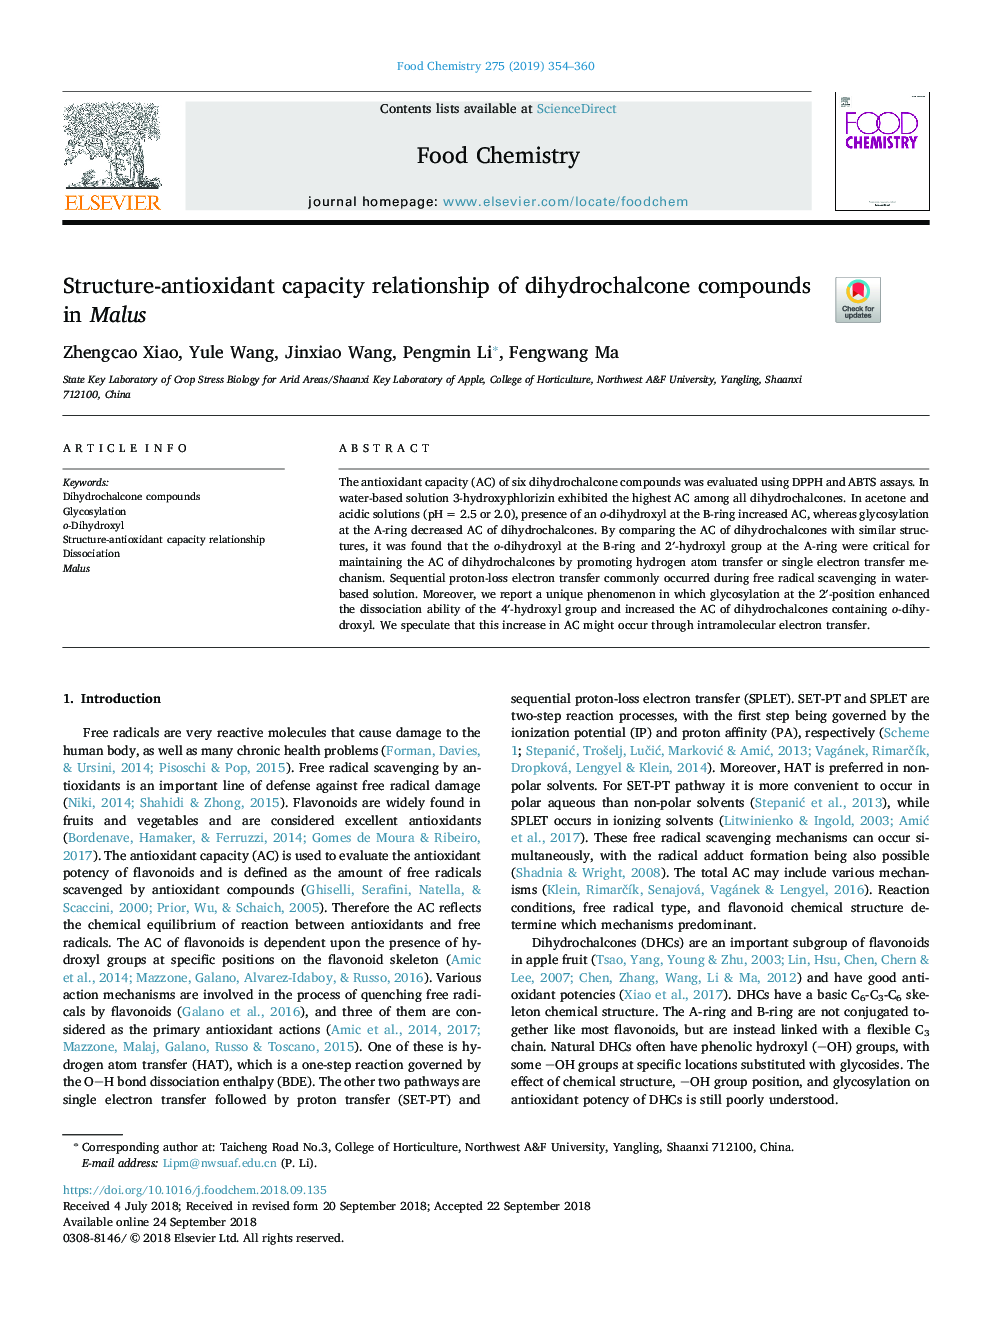 ارتباط ظرفیت آنتی اکسیدانی ترکیبات دی هیدروکالکون در مالوس